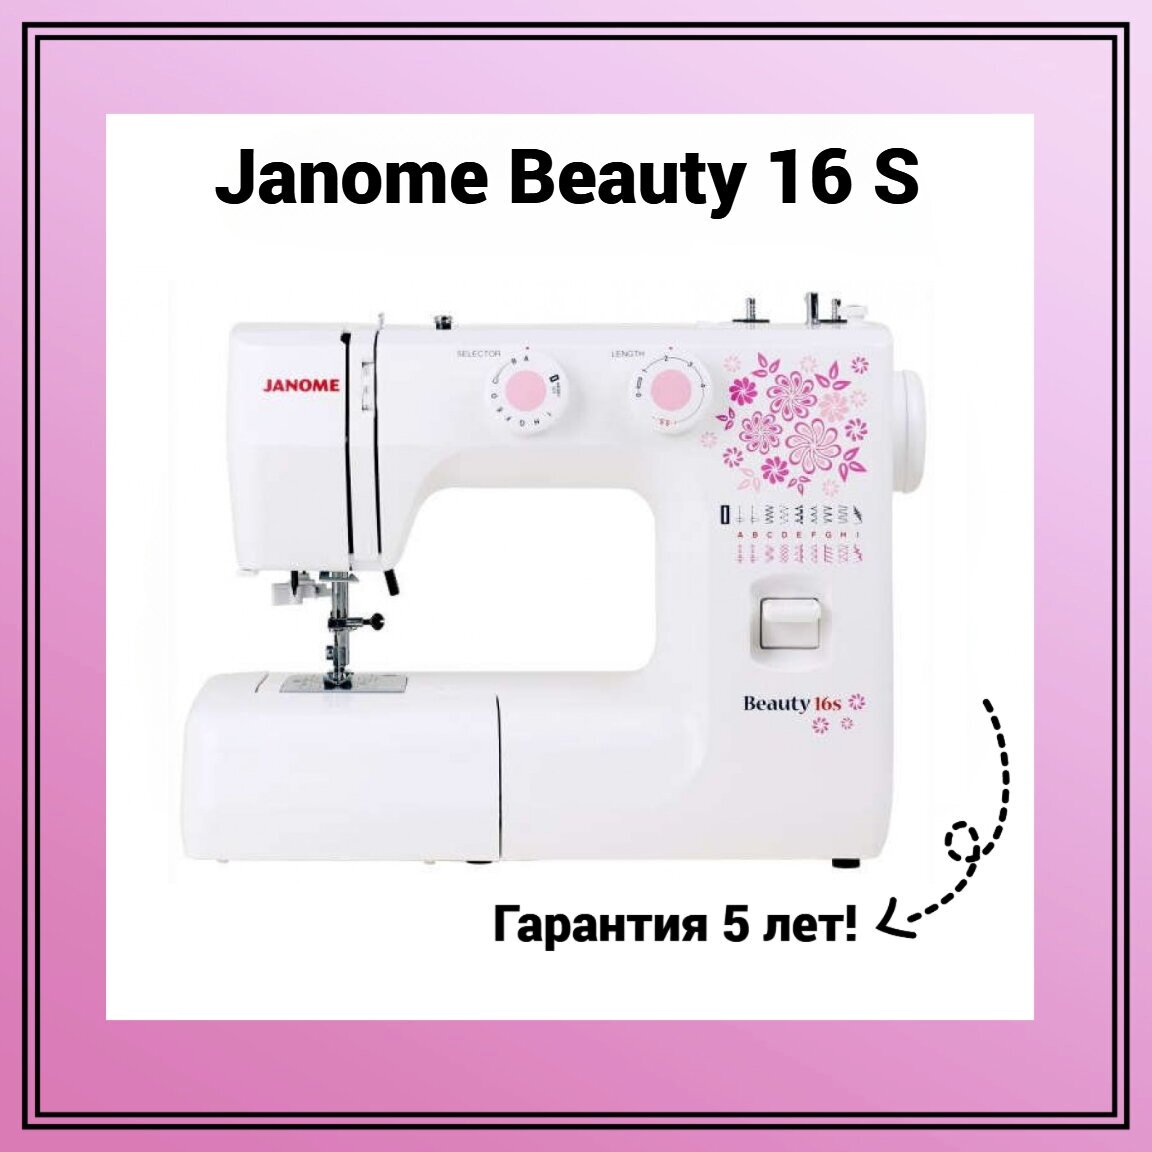 Janome Beauty 16S - фото №2